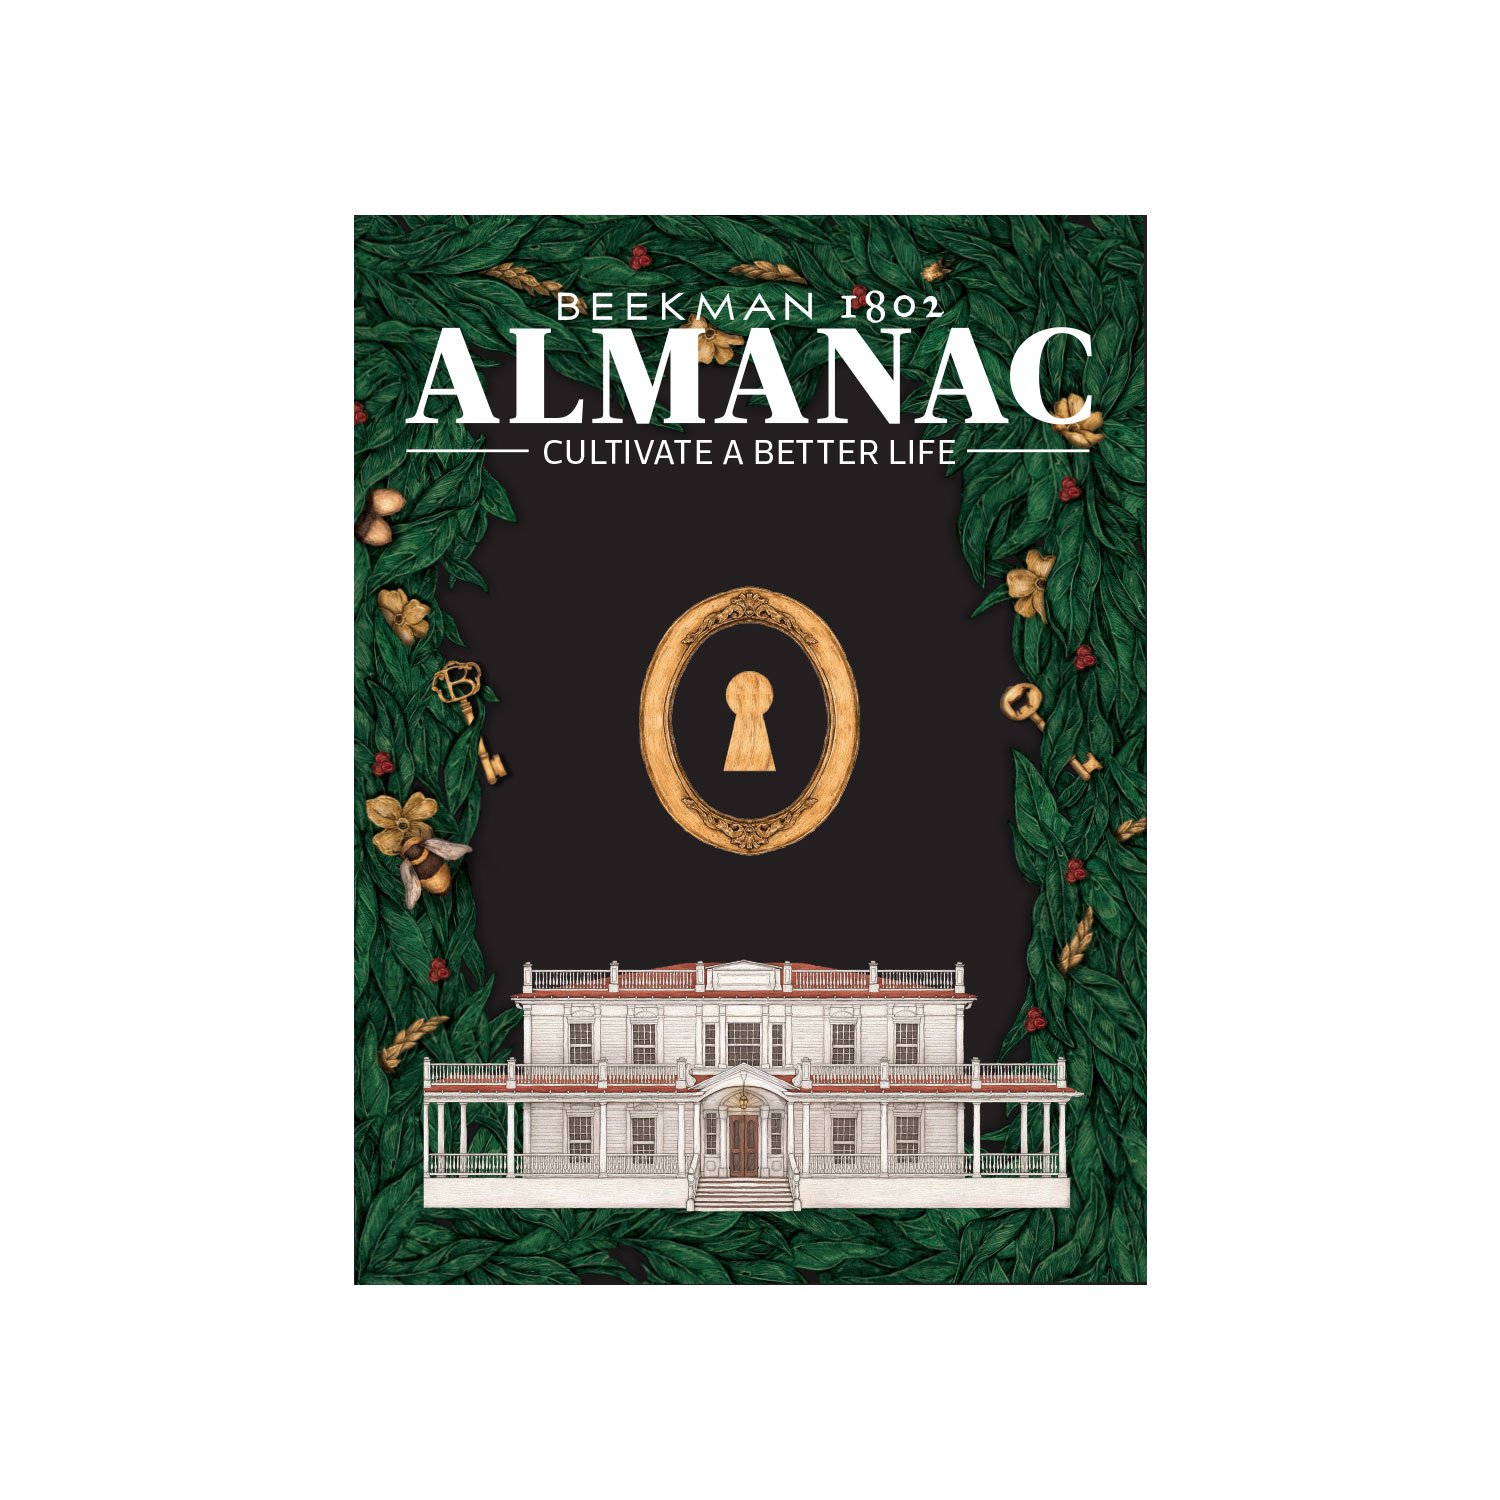 Beekman 1802 Almanac Winter Issue 2018